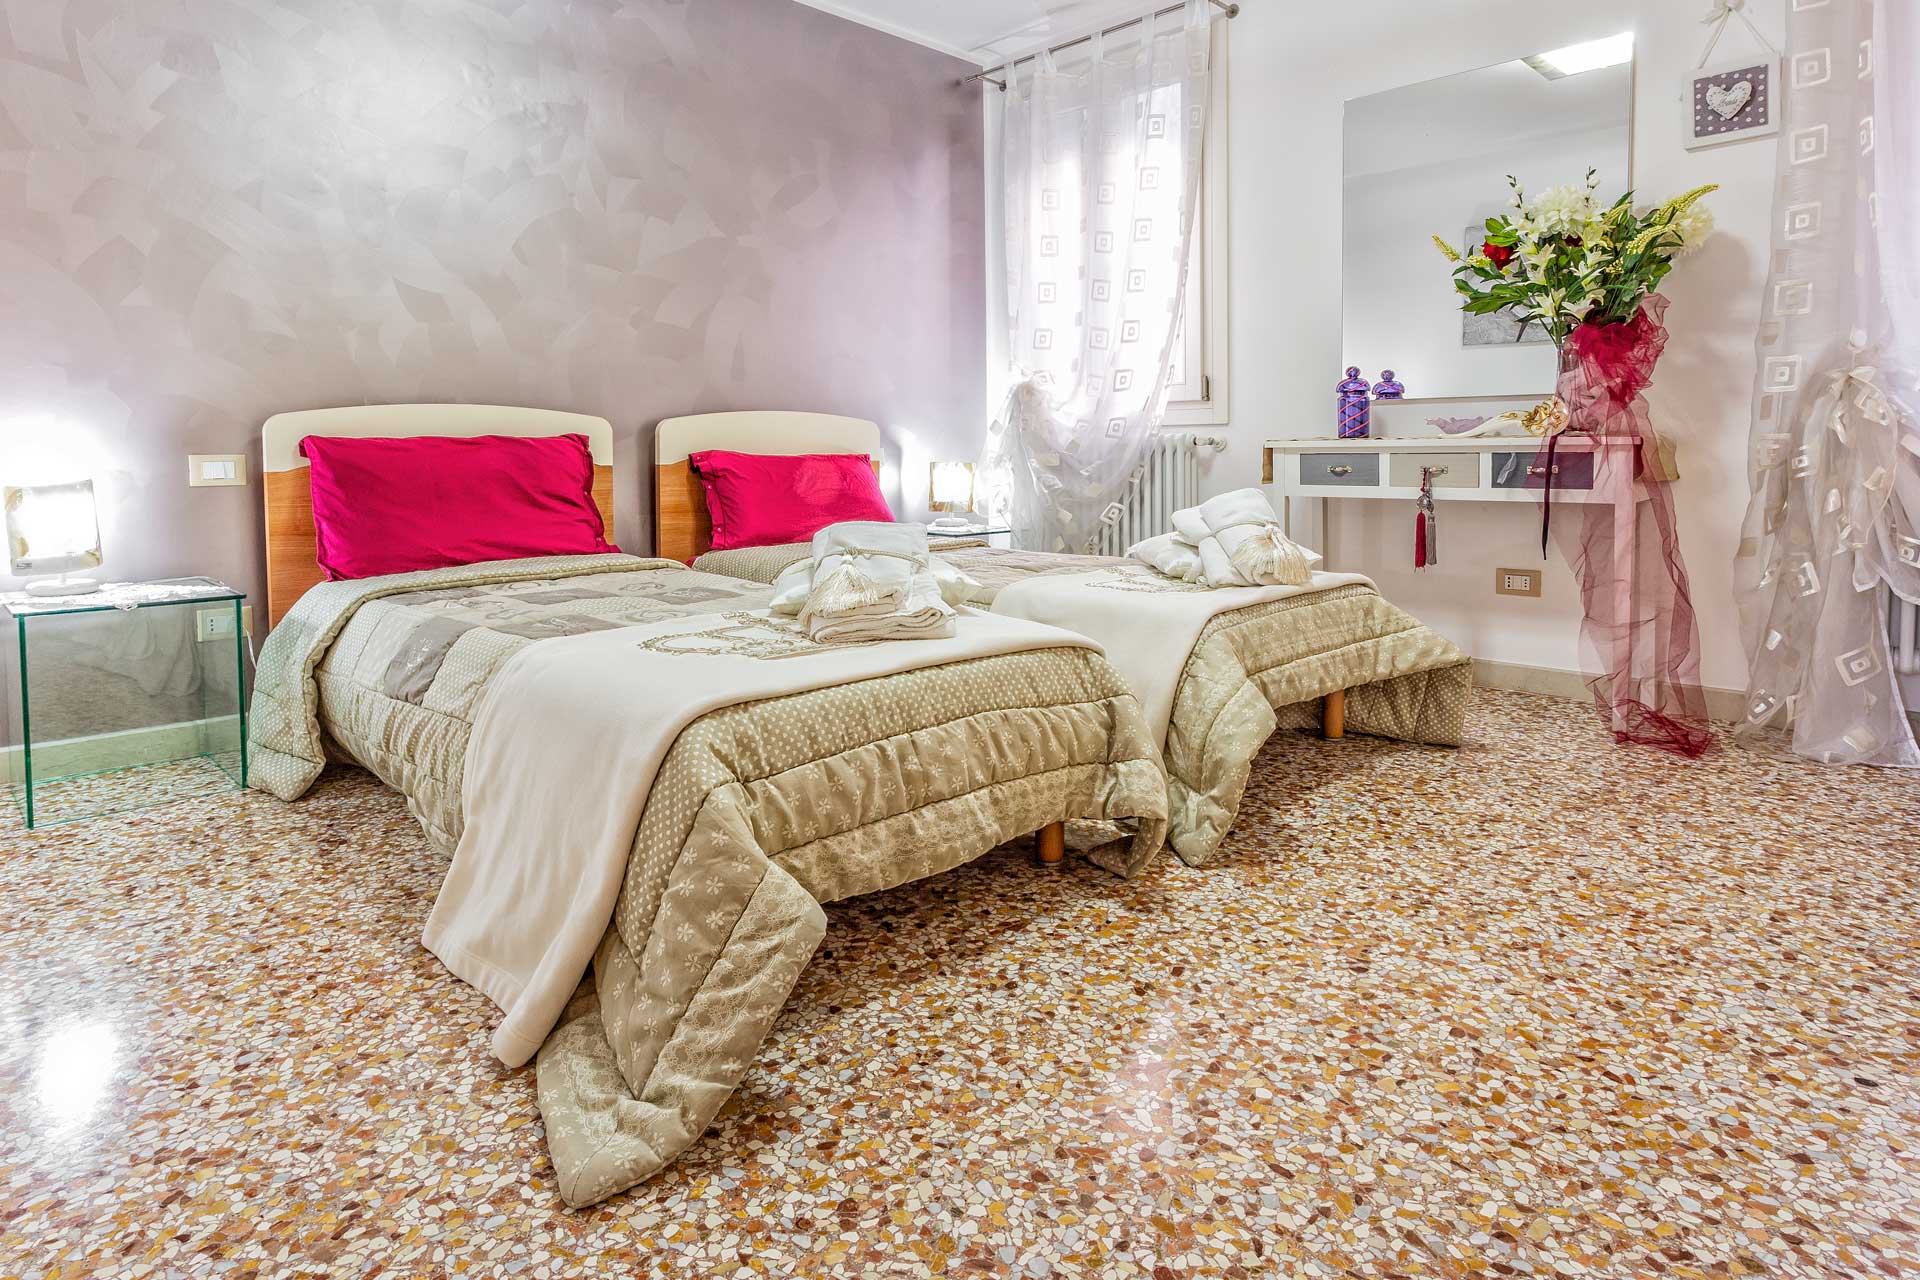 Tosca - Venice Dream House Apartments